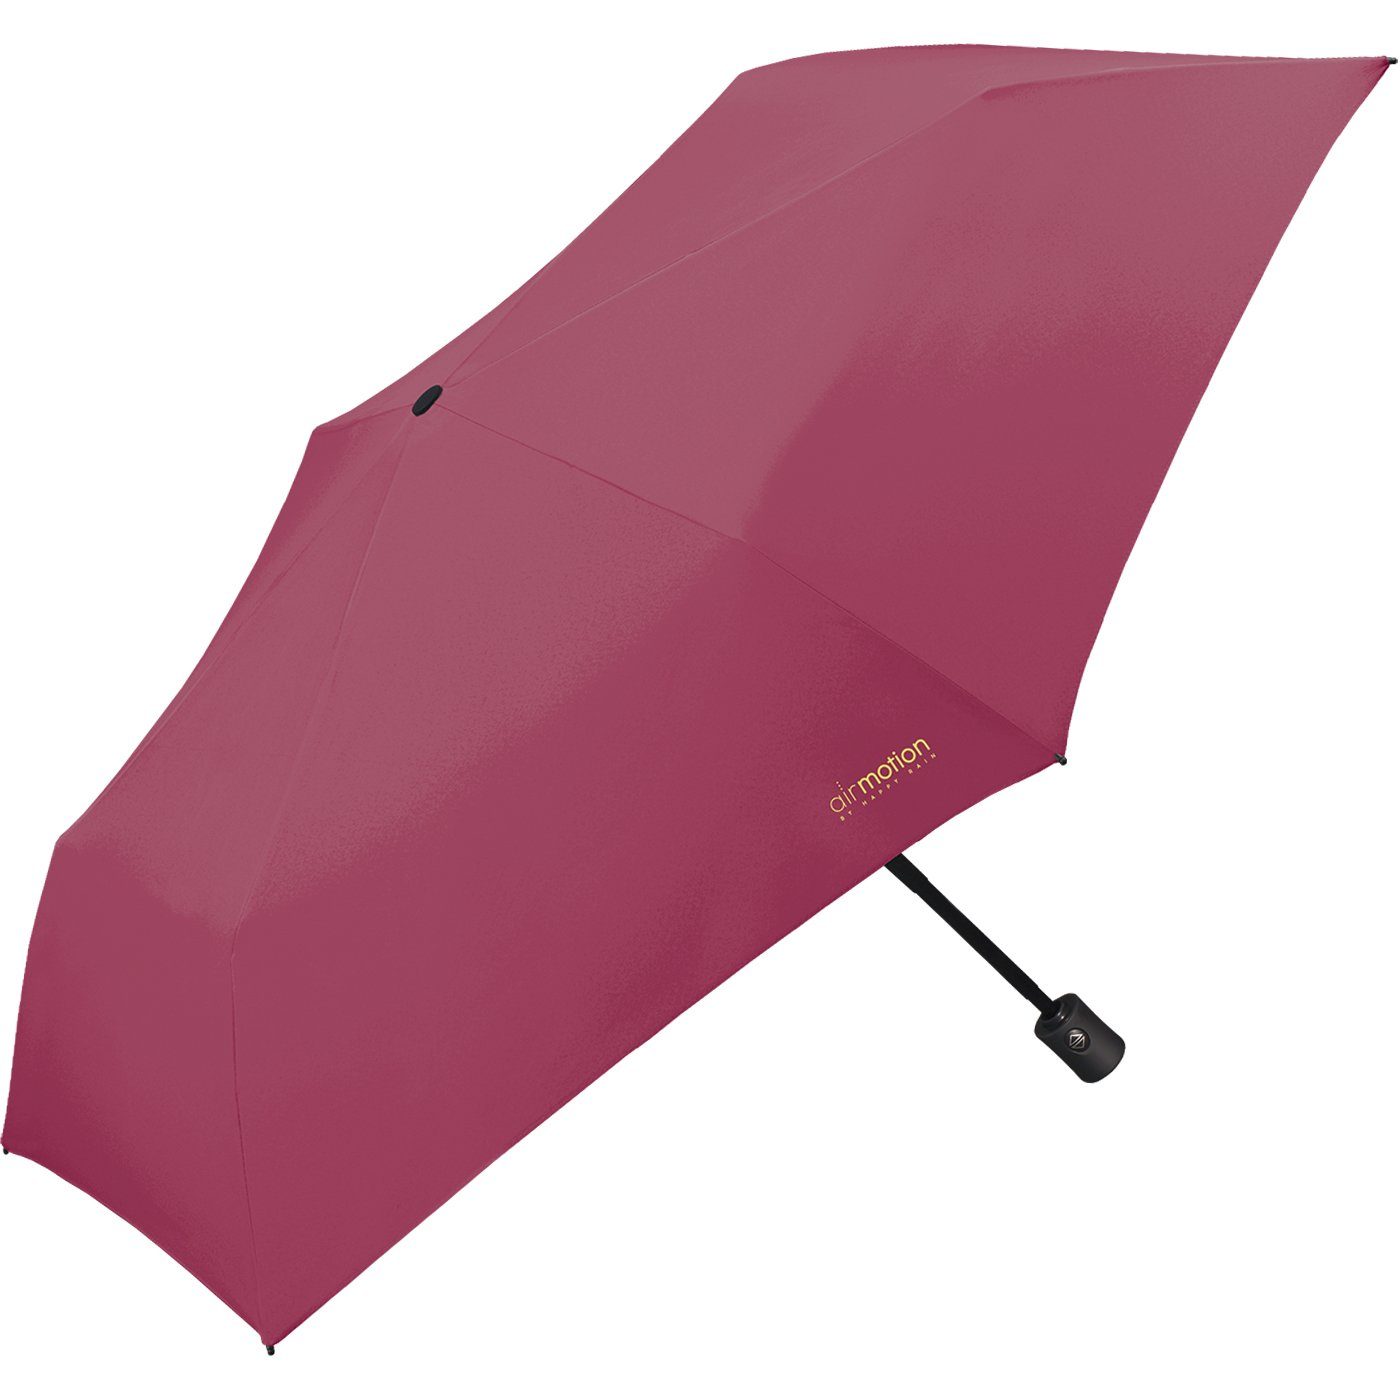 Air perfekt pink Taschenregenschirm - HAPPY und g Handtasche Gepäck Minischirm 174 superleicht, für Motion - Auf-Zu-Automatik leichtester vollautomatischer RAIN